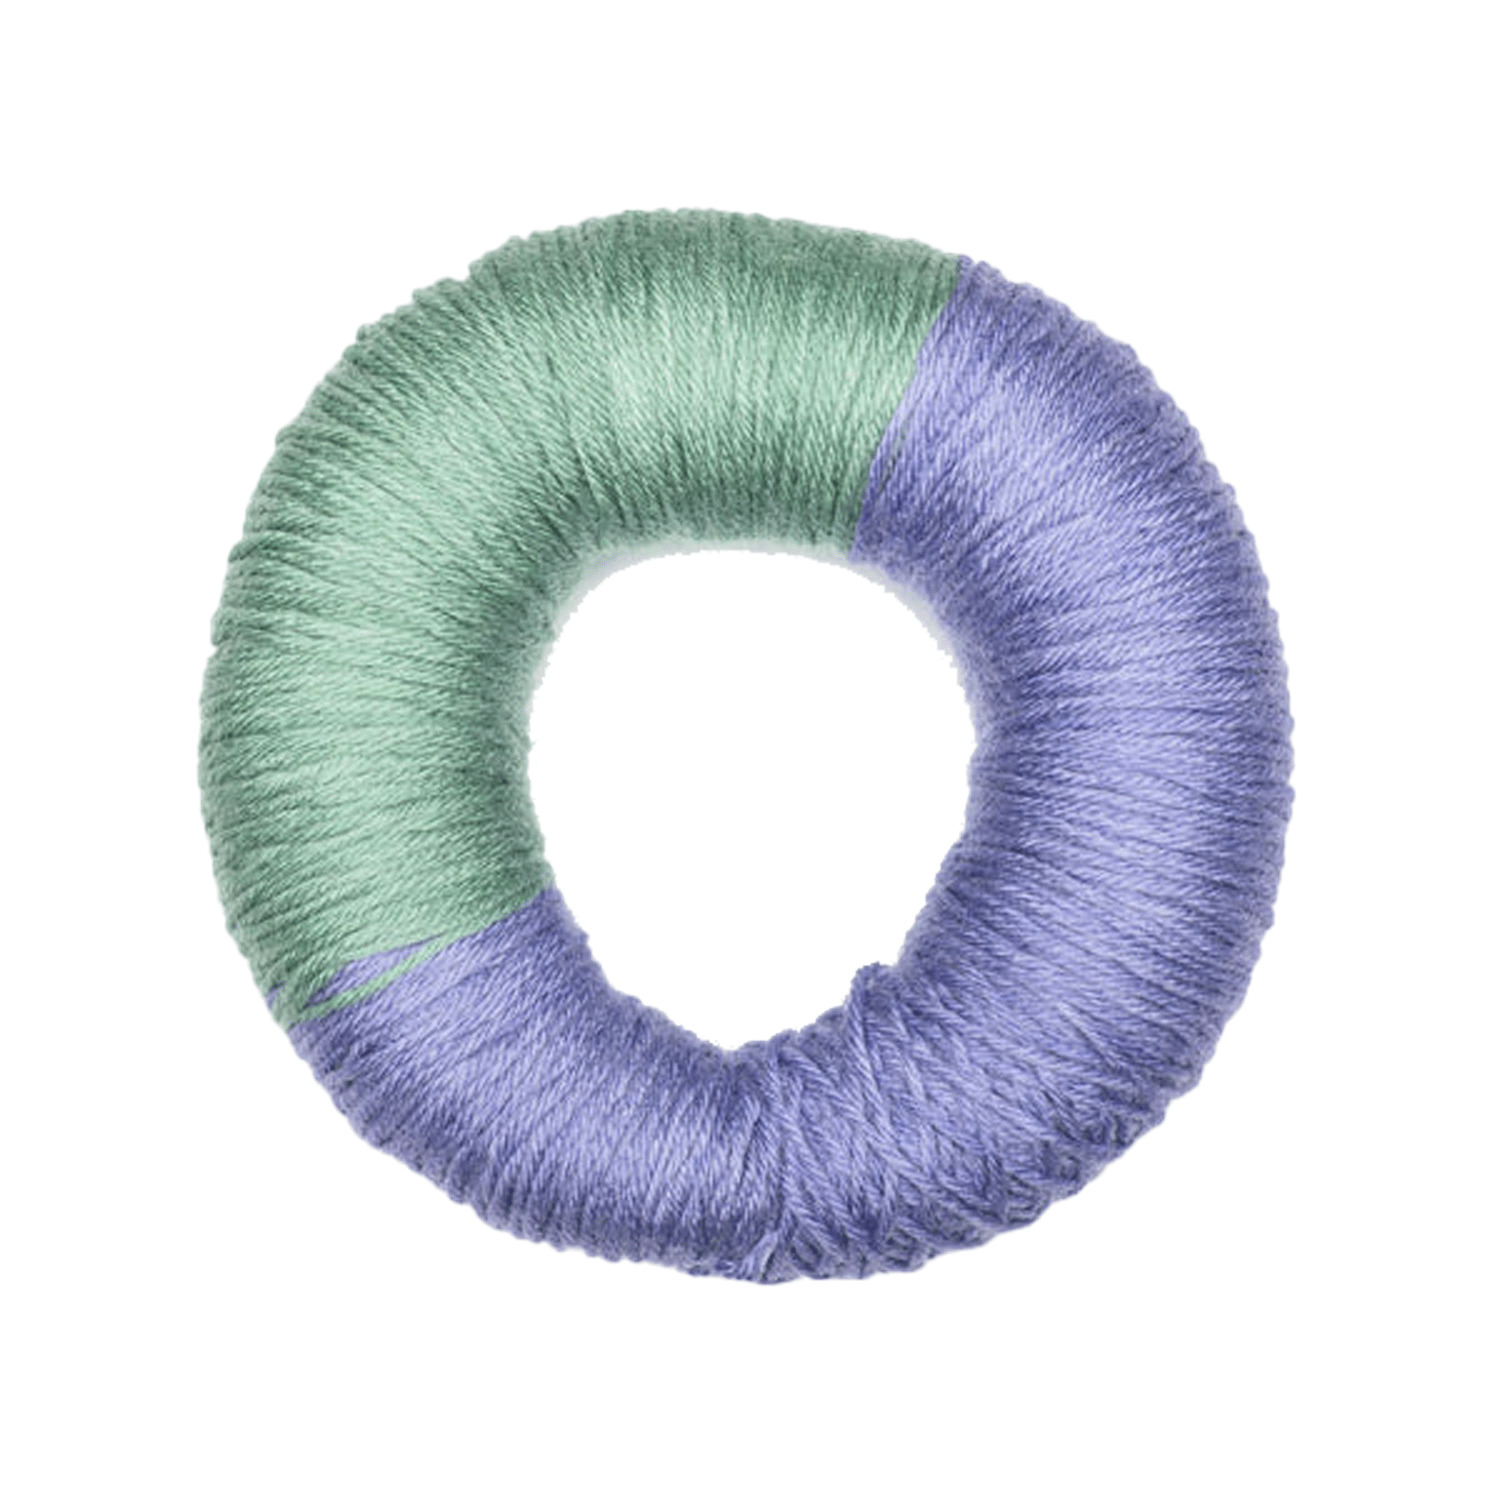 Caron - Simply Soft O'Go - Yarn, Aqua Mist Lavender